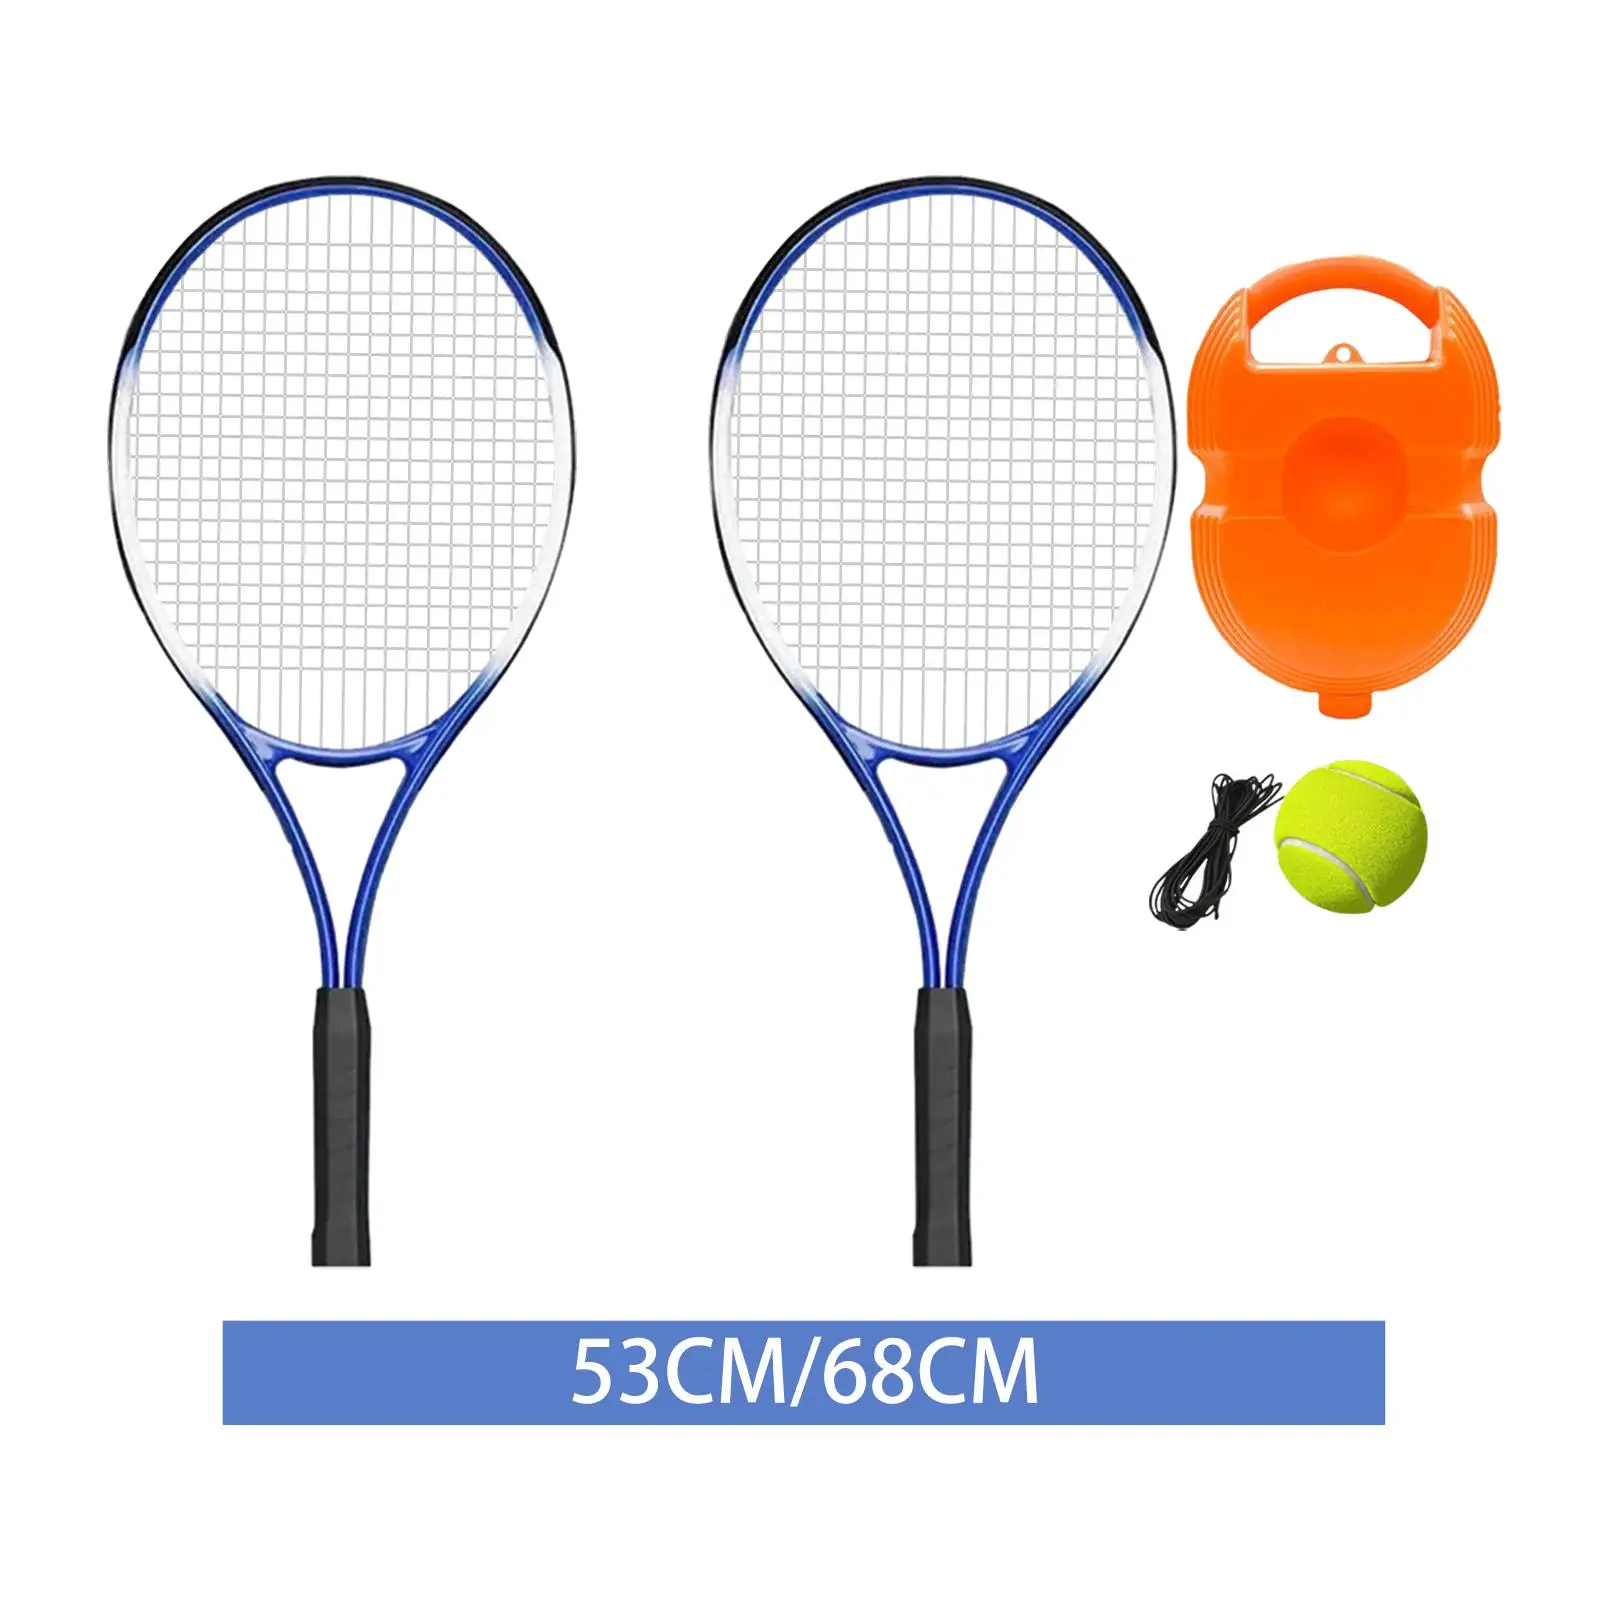 

Теннисная ракетка, Профессиональная теннисная ракетка для соло, тренировочная ракетка для начинающих, тренировочная летняя ракетка